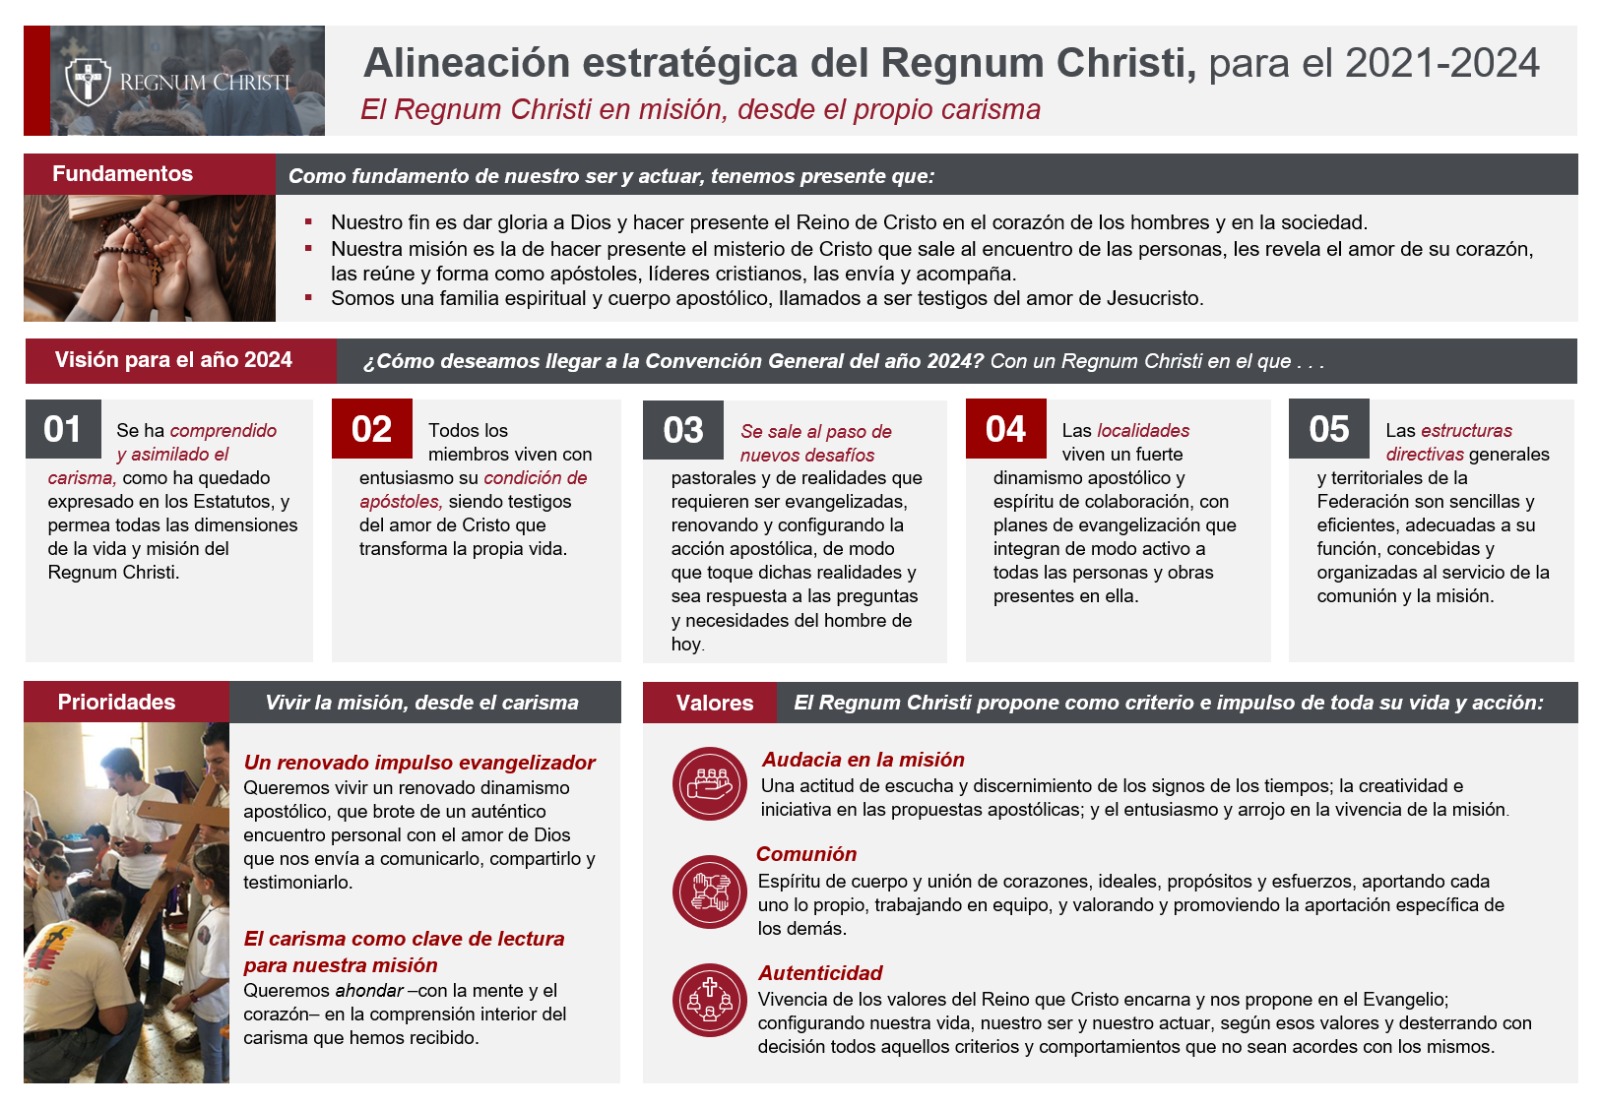 Alineación estratégica para el Regnum Christi 2021 - 2024